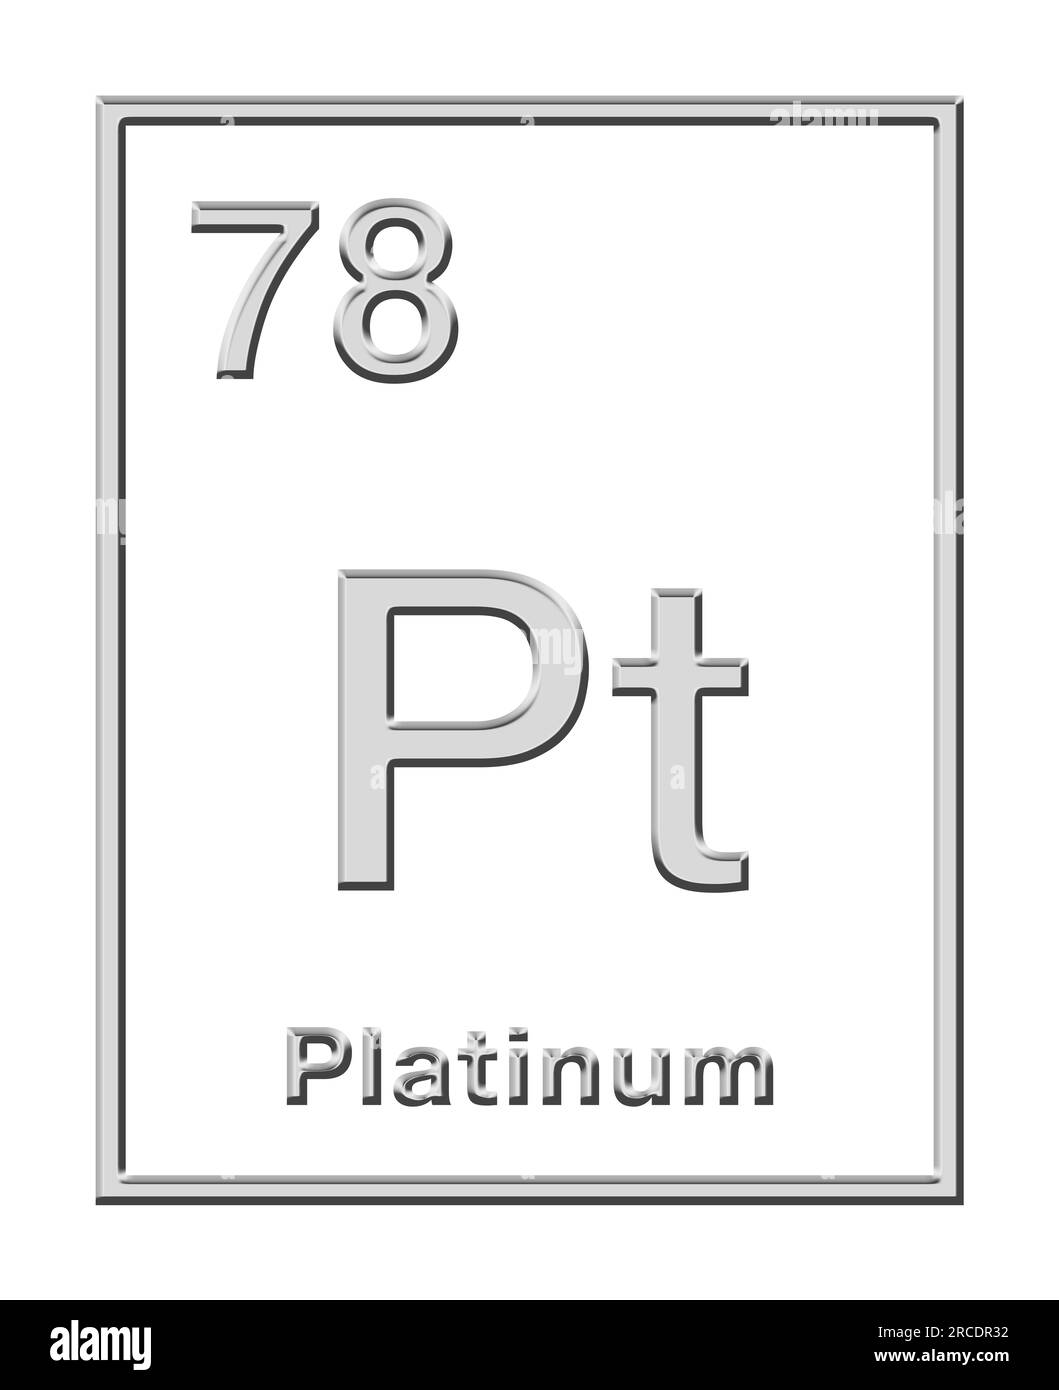 Platin, chemisches Element aus dem Periodensystem, mit Reliefform. Edelmetall mit chemischem Symbol PT (Spanische plata) und Atomzahl 78. Stockfoto